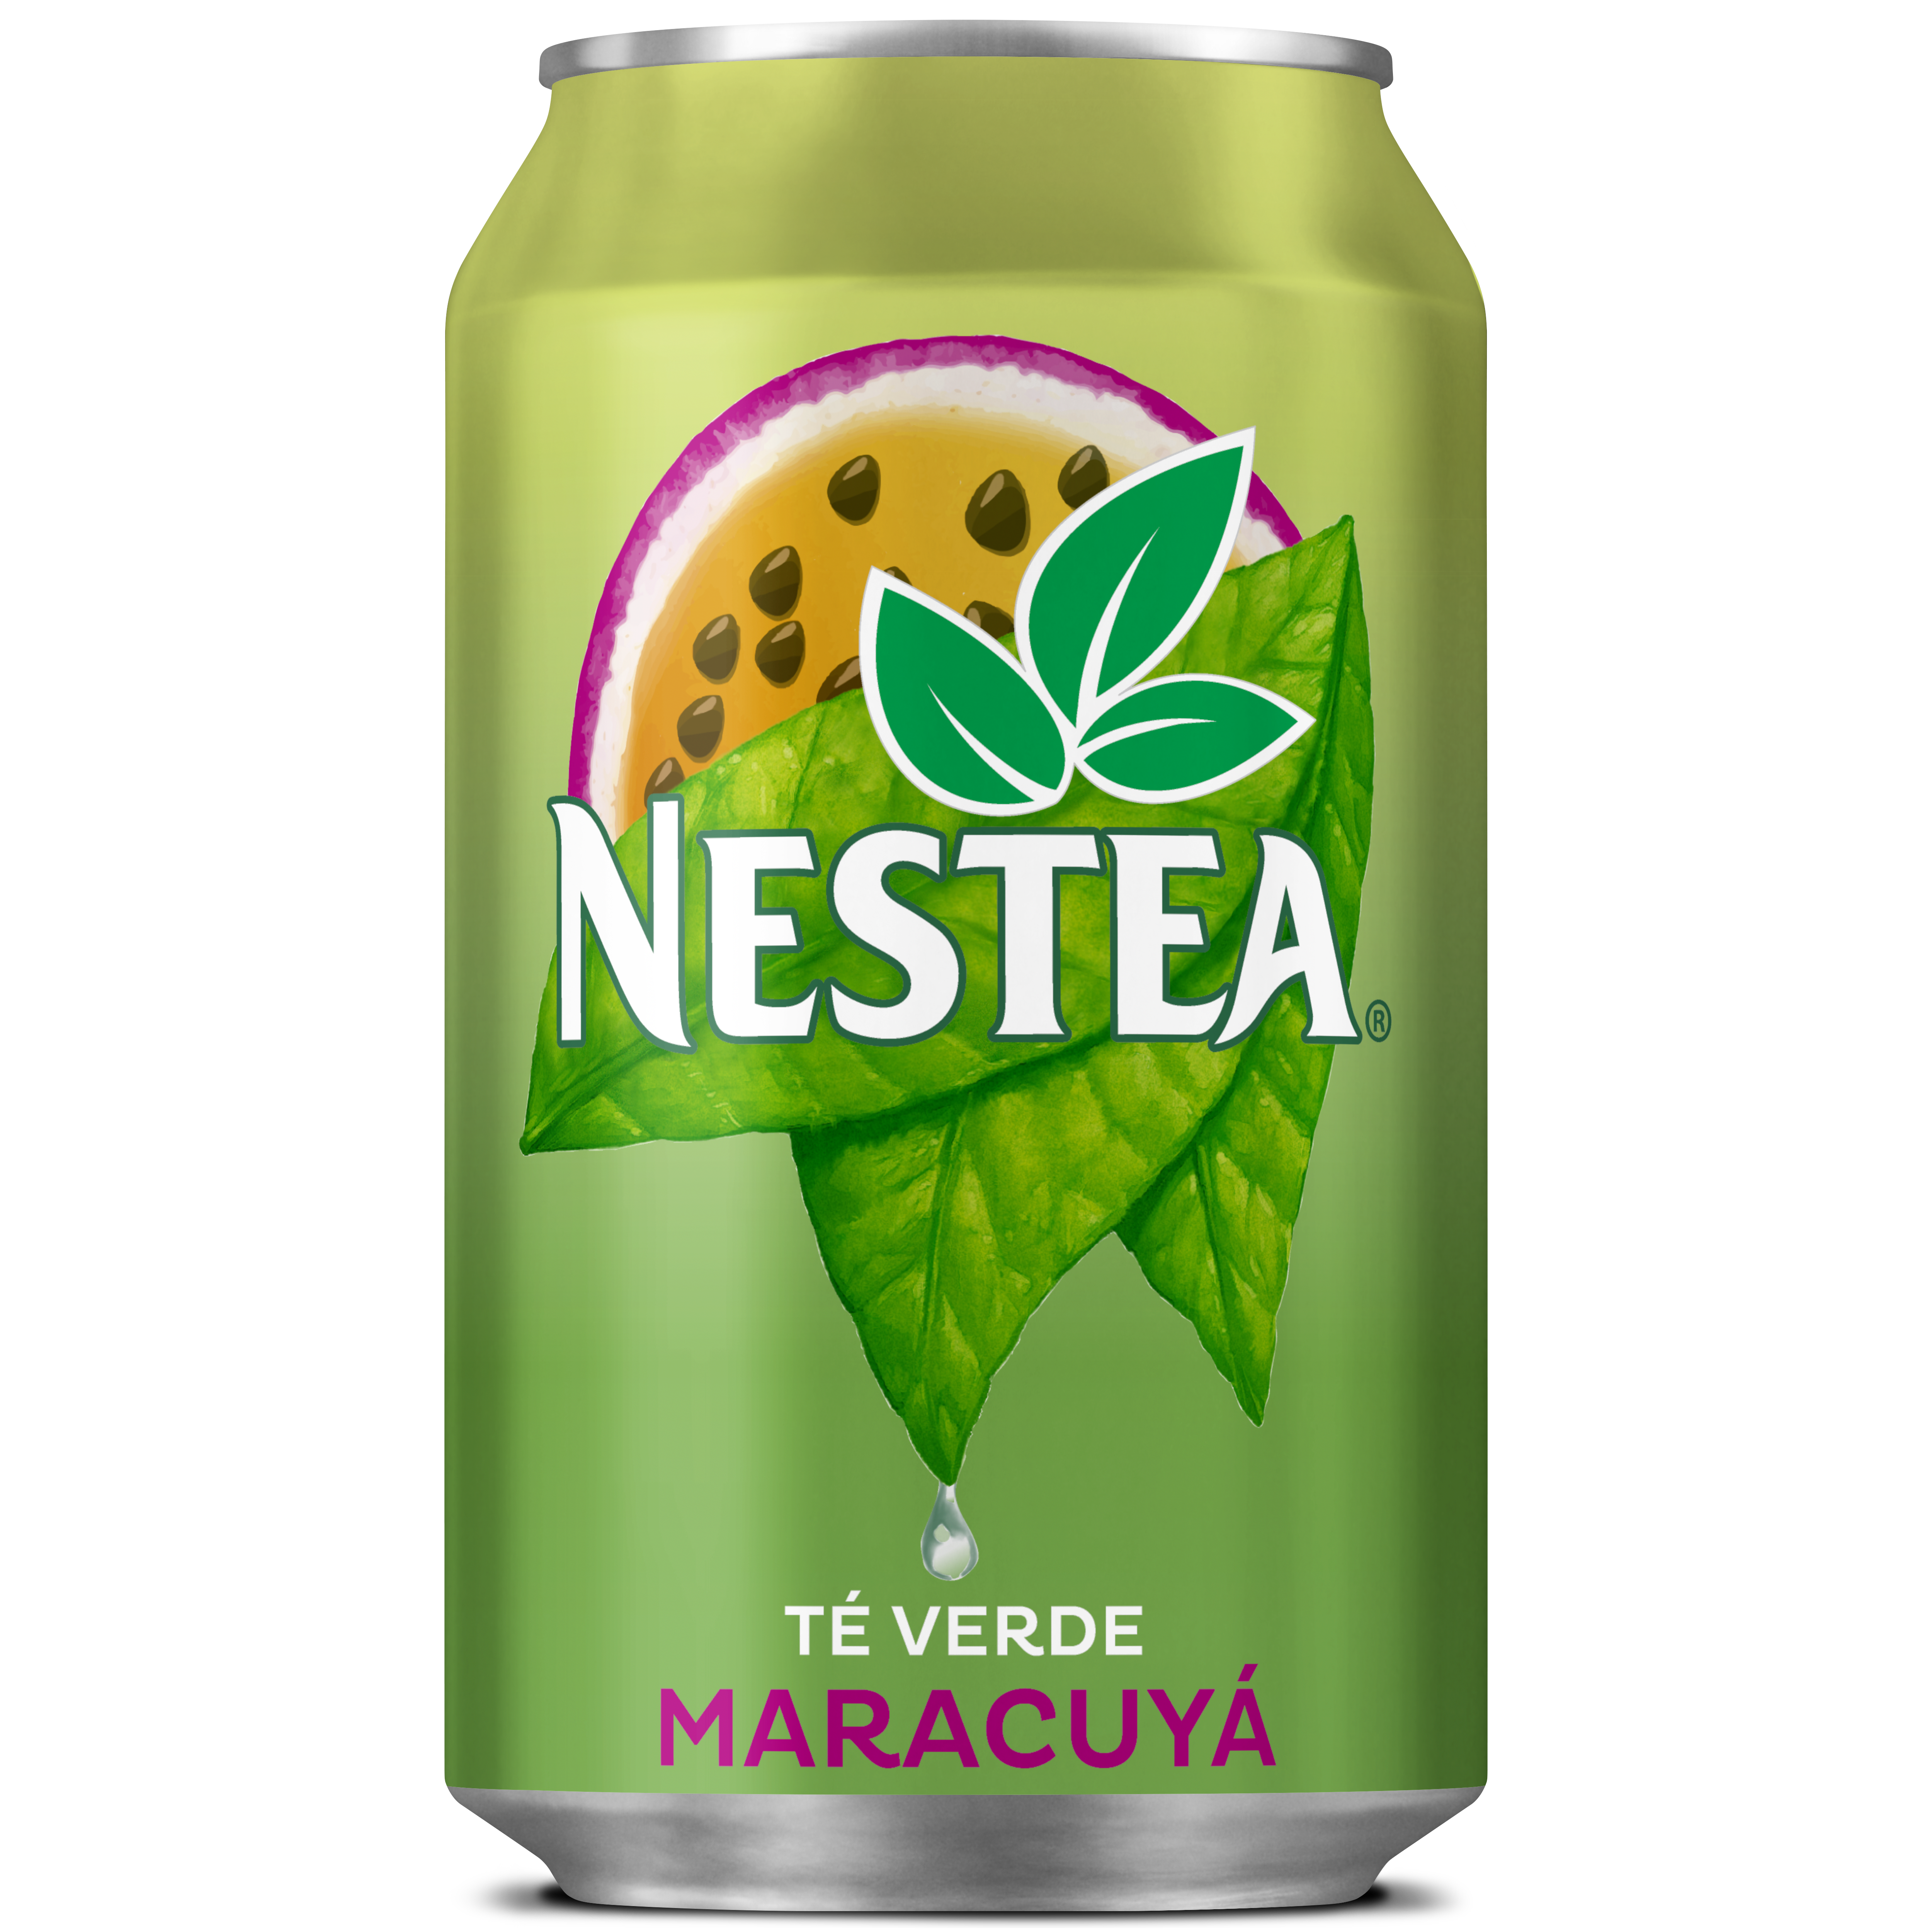 Lata de Nestea con té verde al Maracuyá-Mangostán